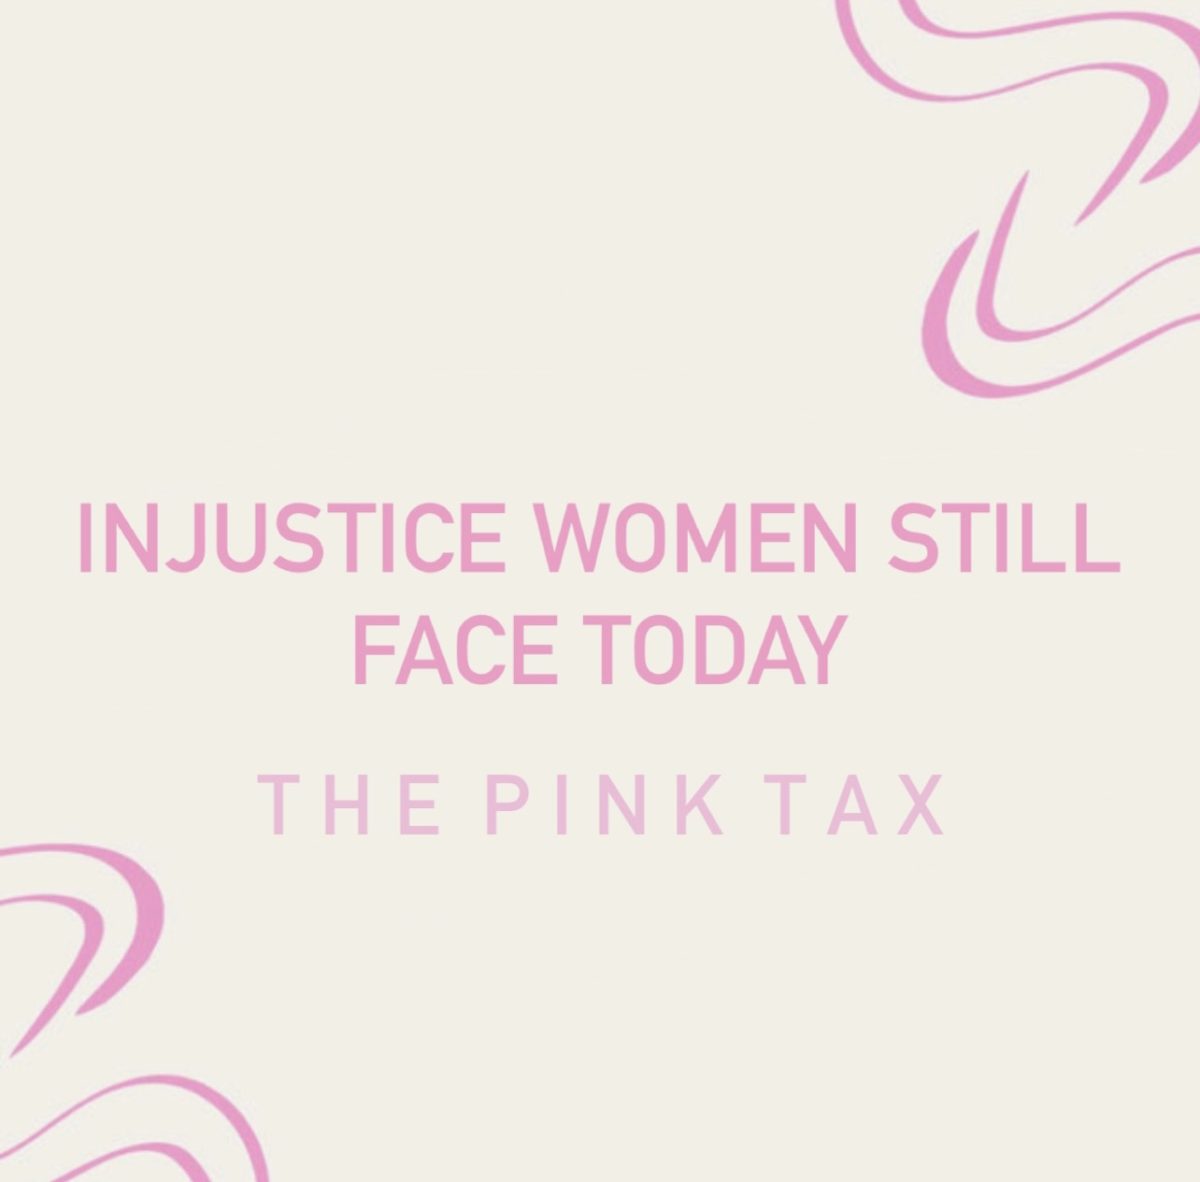 Injustice women still face today